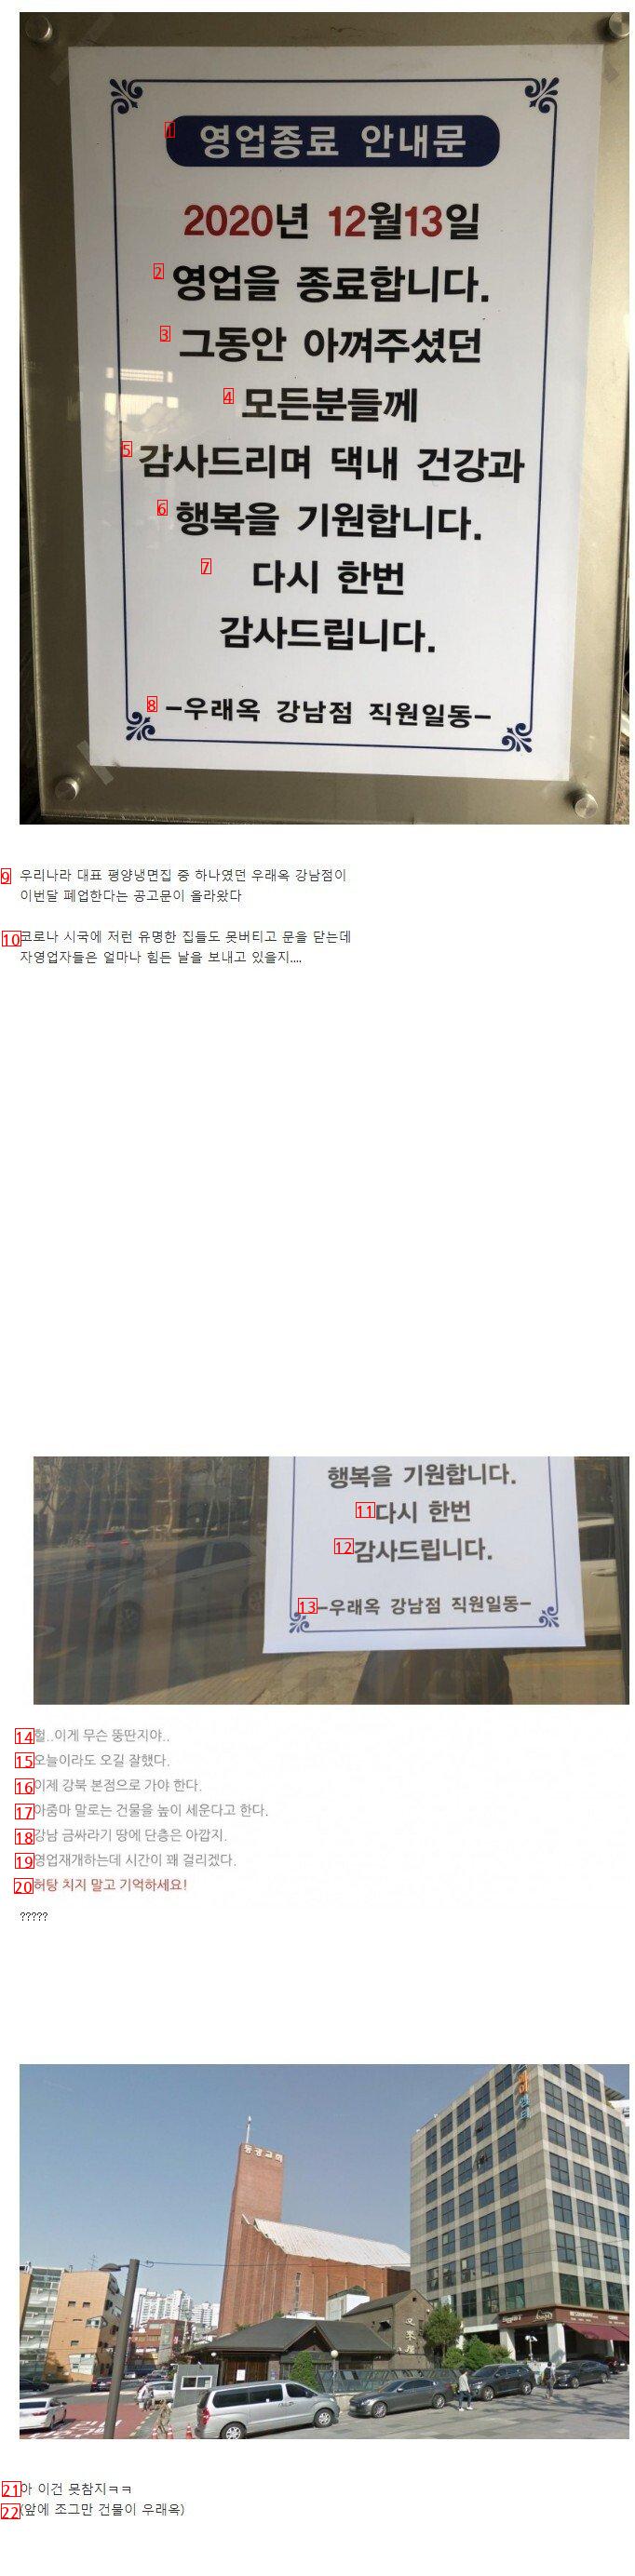 ソウルの有名平壌冷麺店が結局廃業した理由jpg